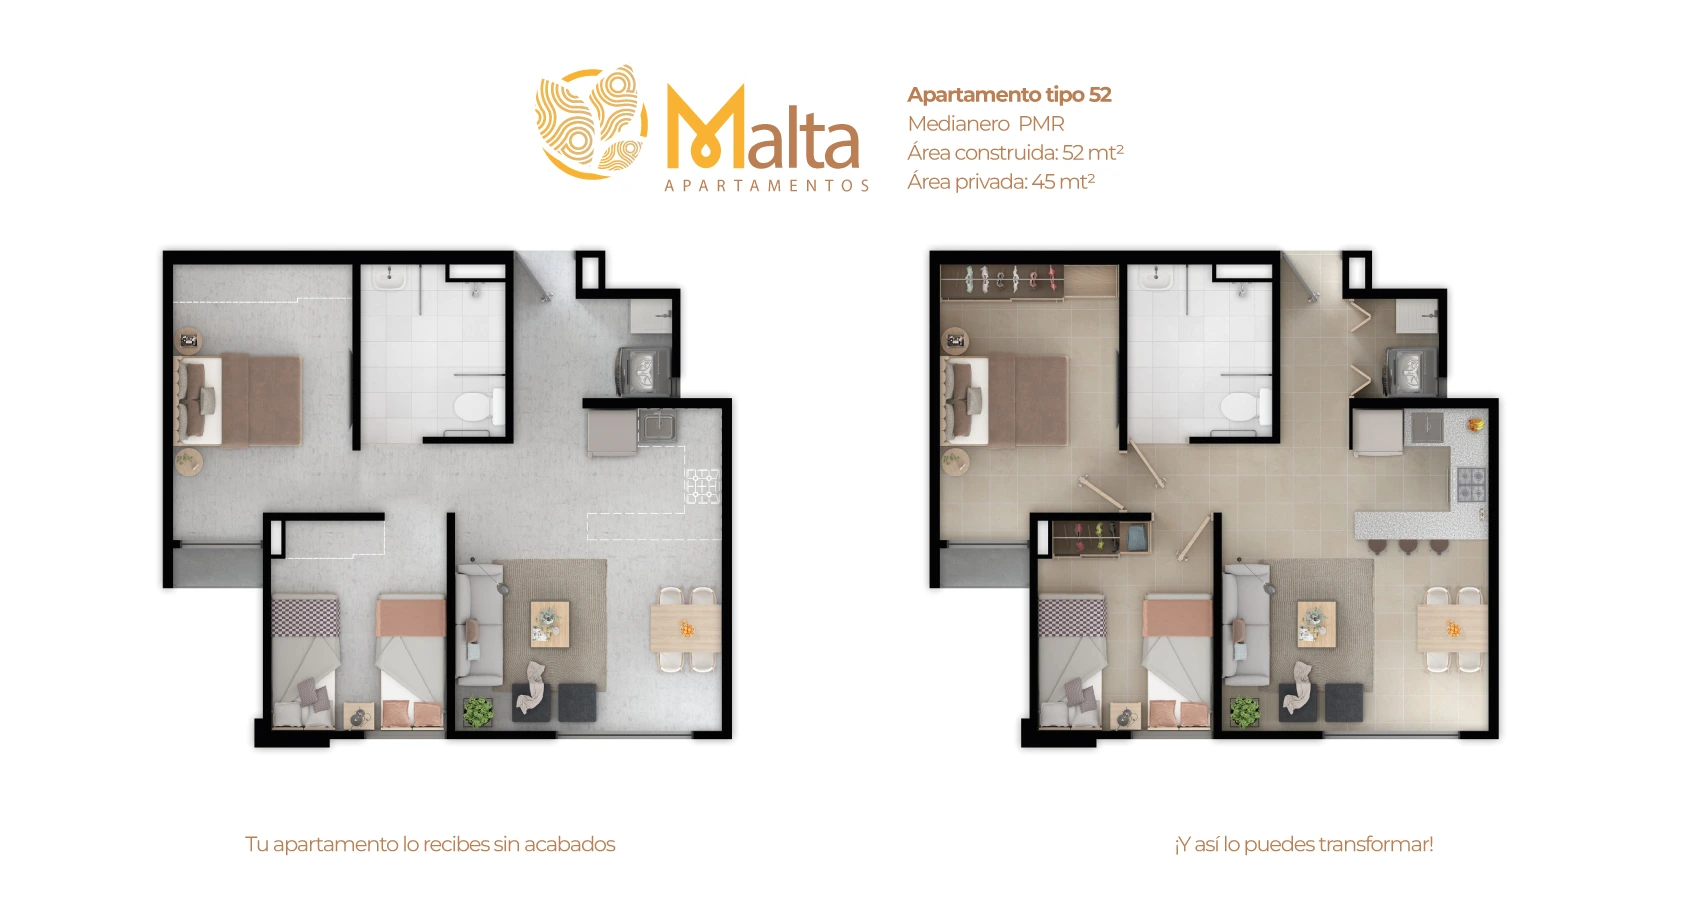 Malta proyecto de vivienda en barranquilla con subsidio de vivienda 